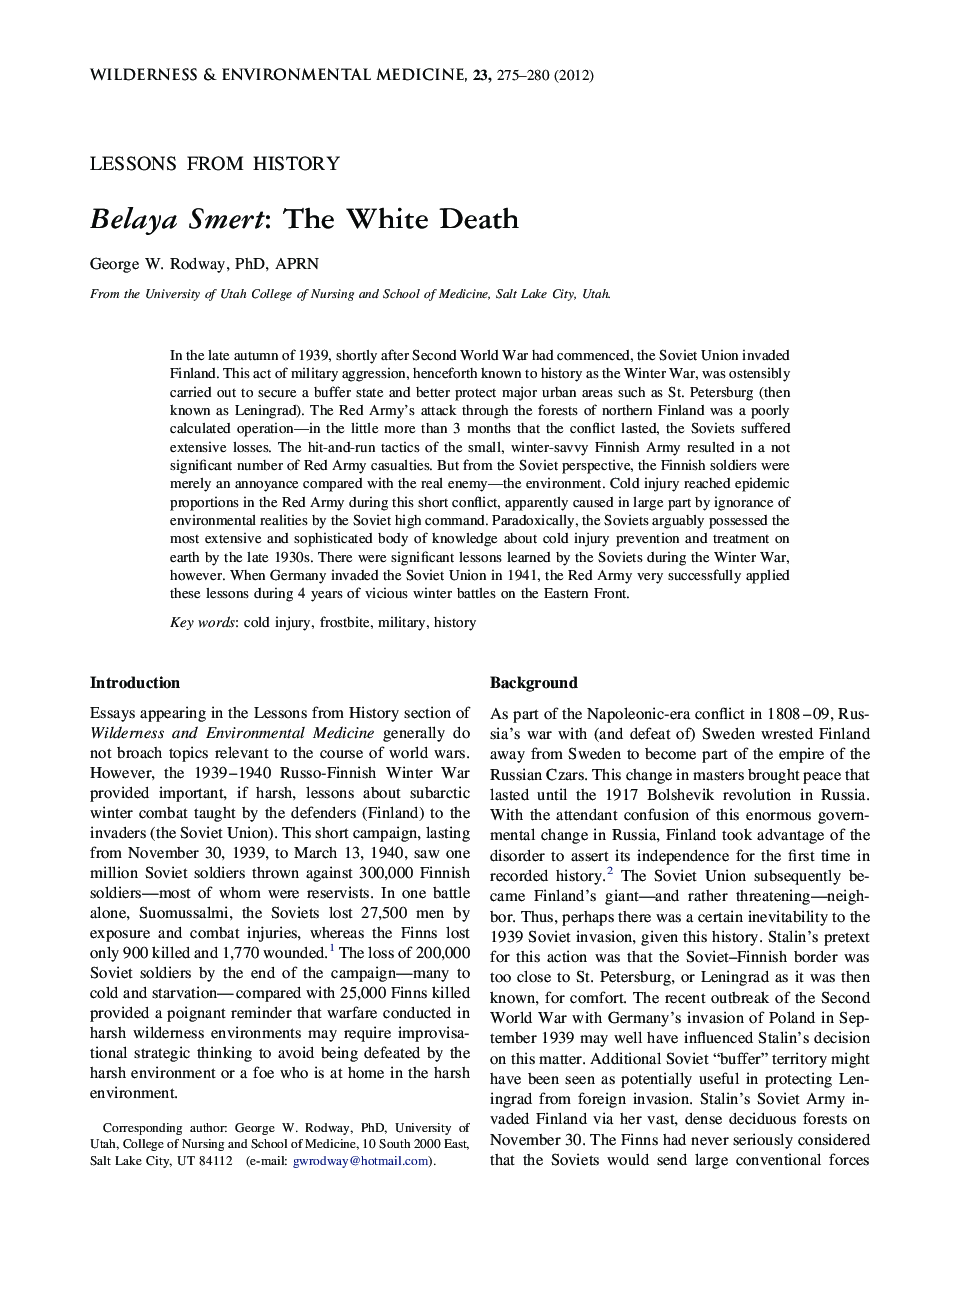 Belaya Smert: The White Death